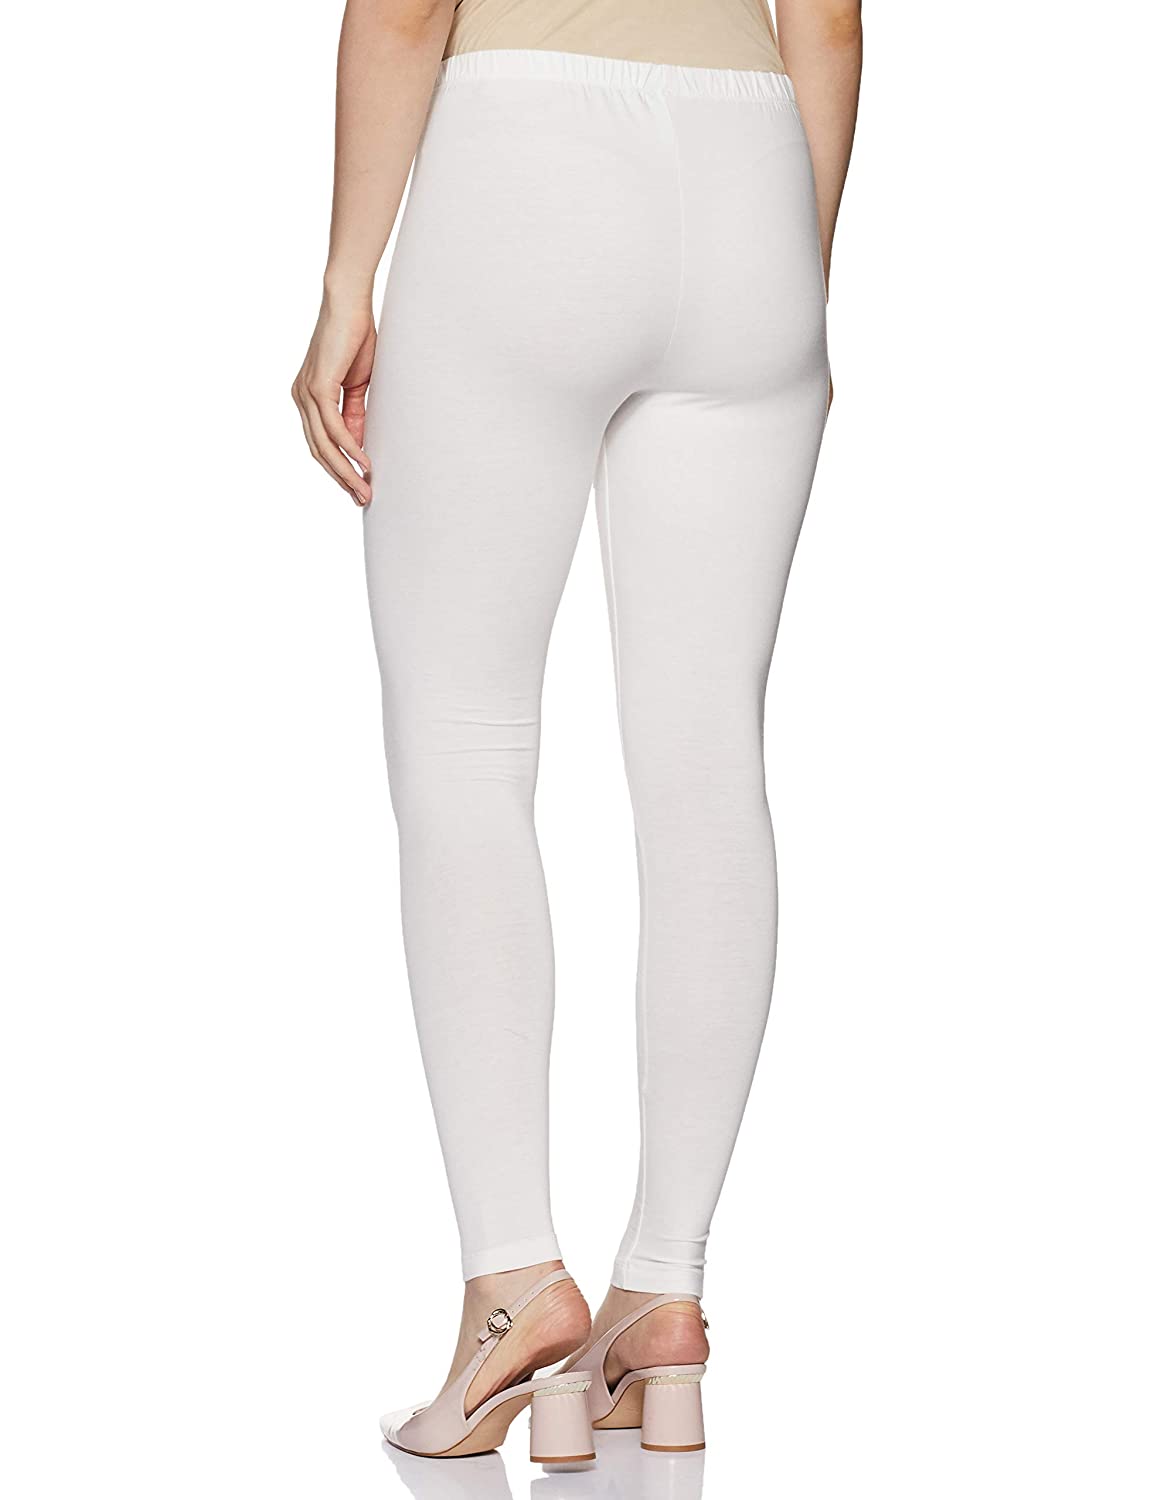 White Rupa Cotton leggings pants for Woman - Stilento